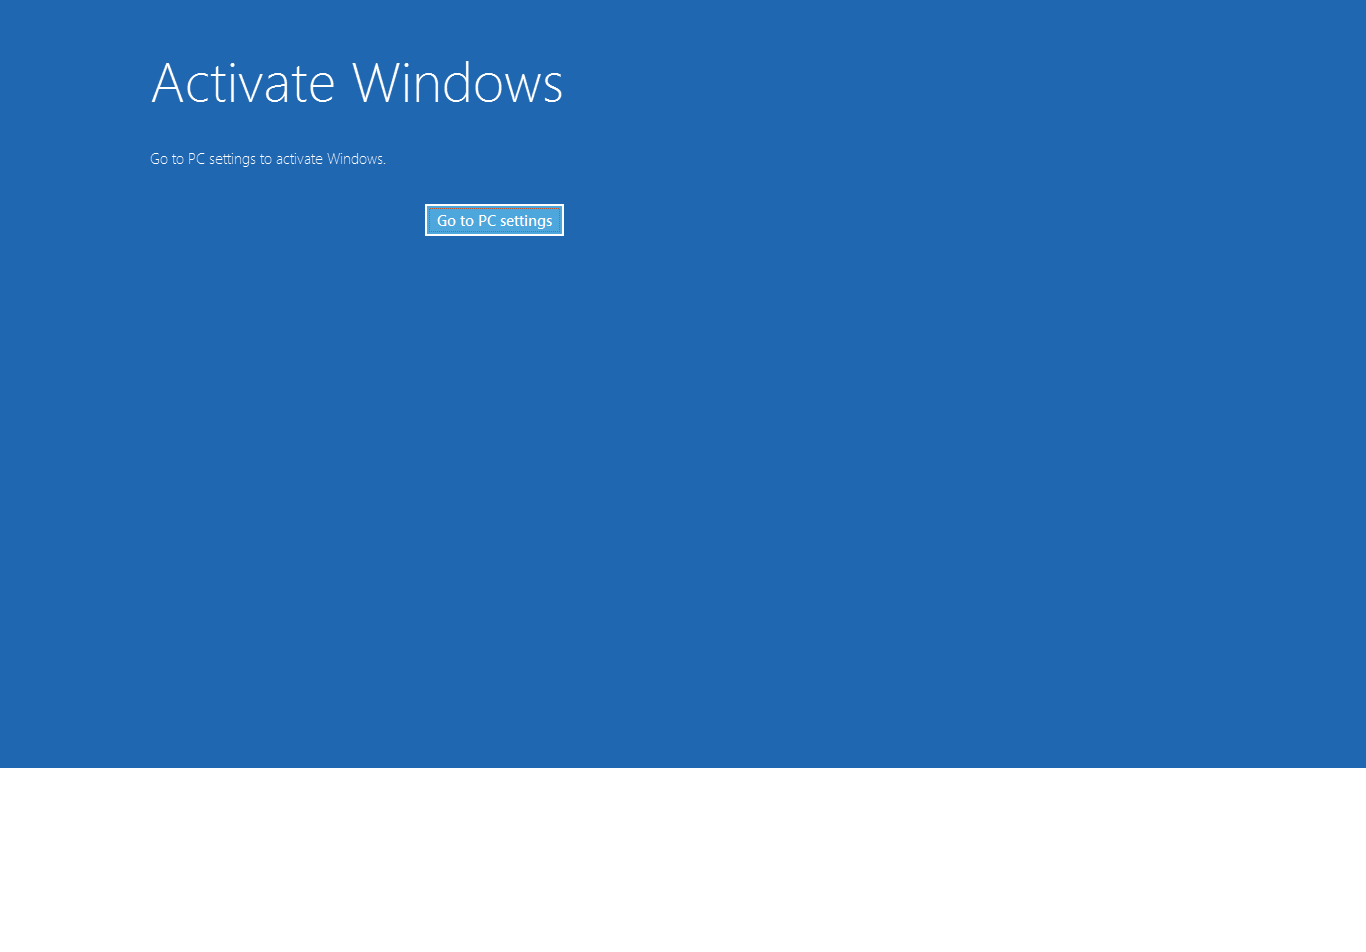 Activate windows 10